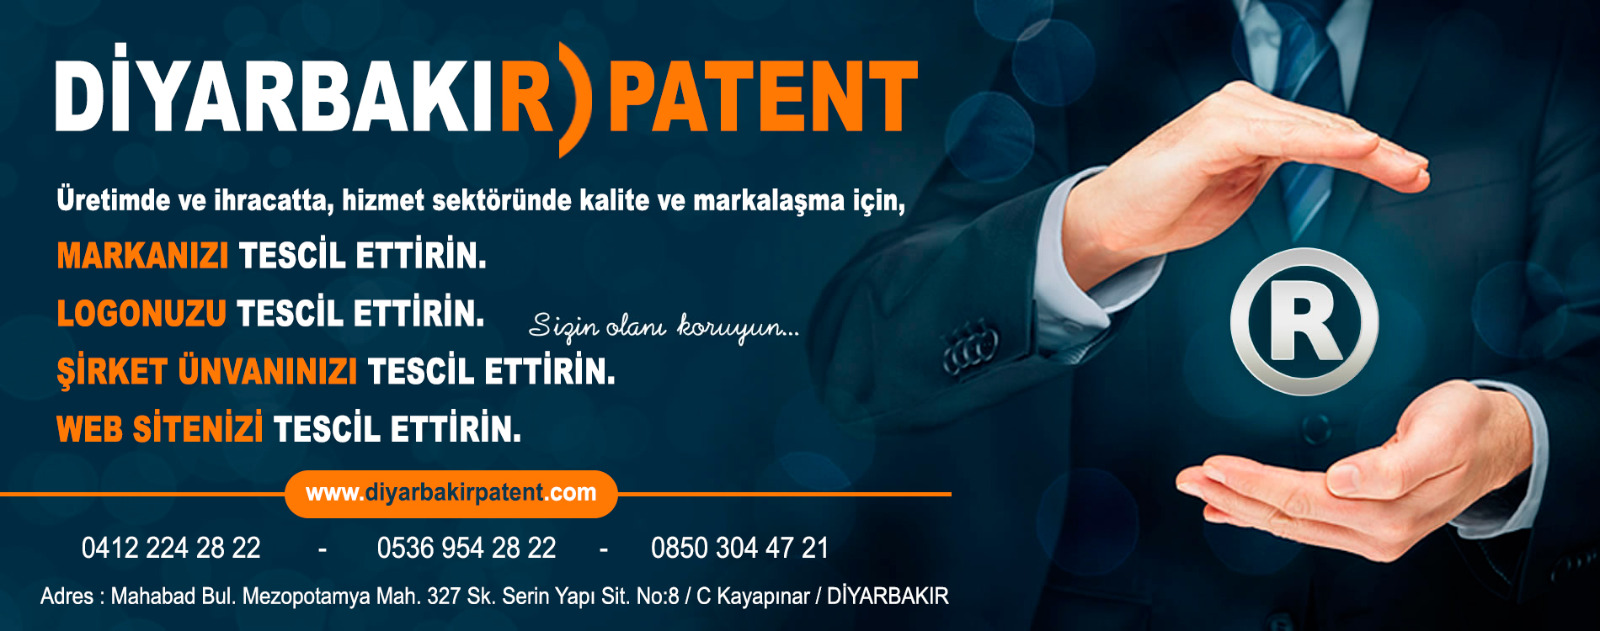 Diyarbakır türk patent dosya takibi sorgulama 0412 224 28 22